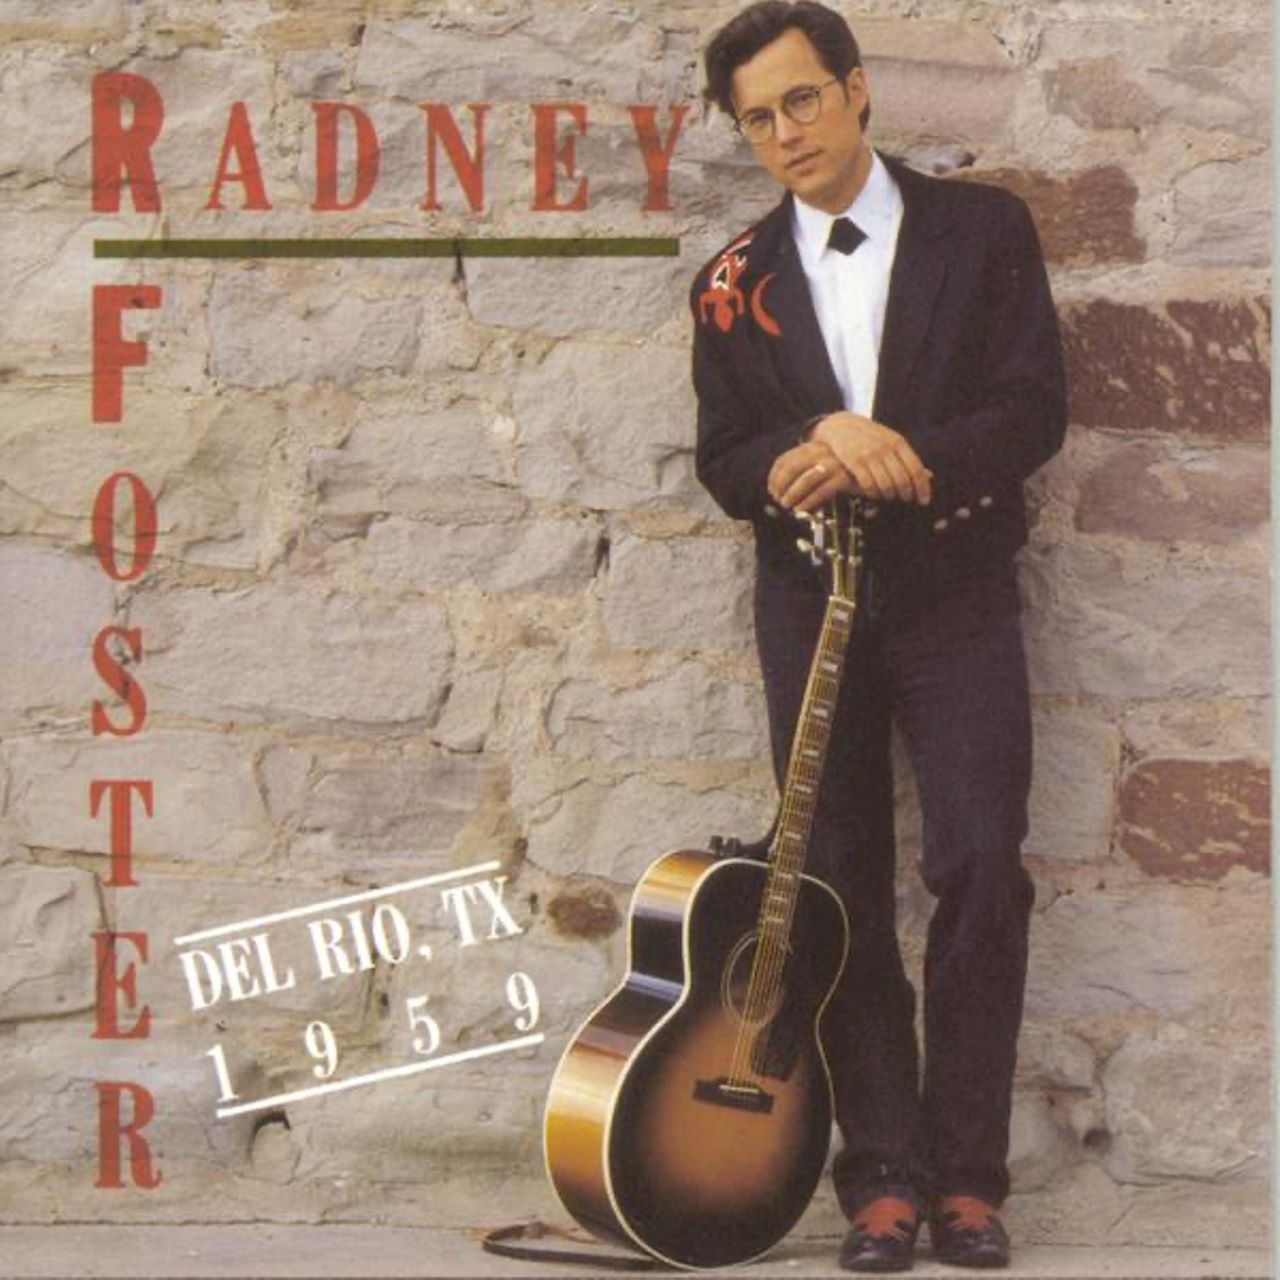 Radney Foster - Del Rio, TX 1959 cover album